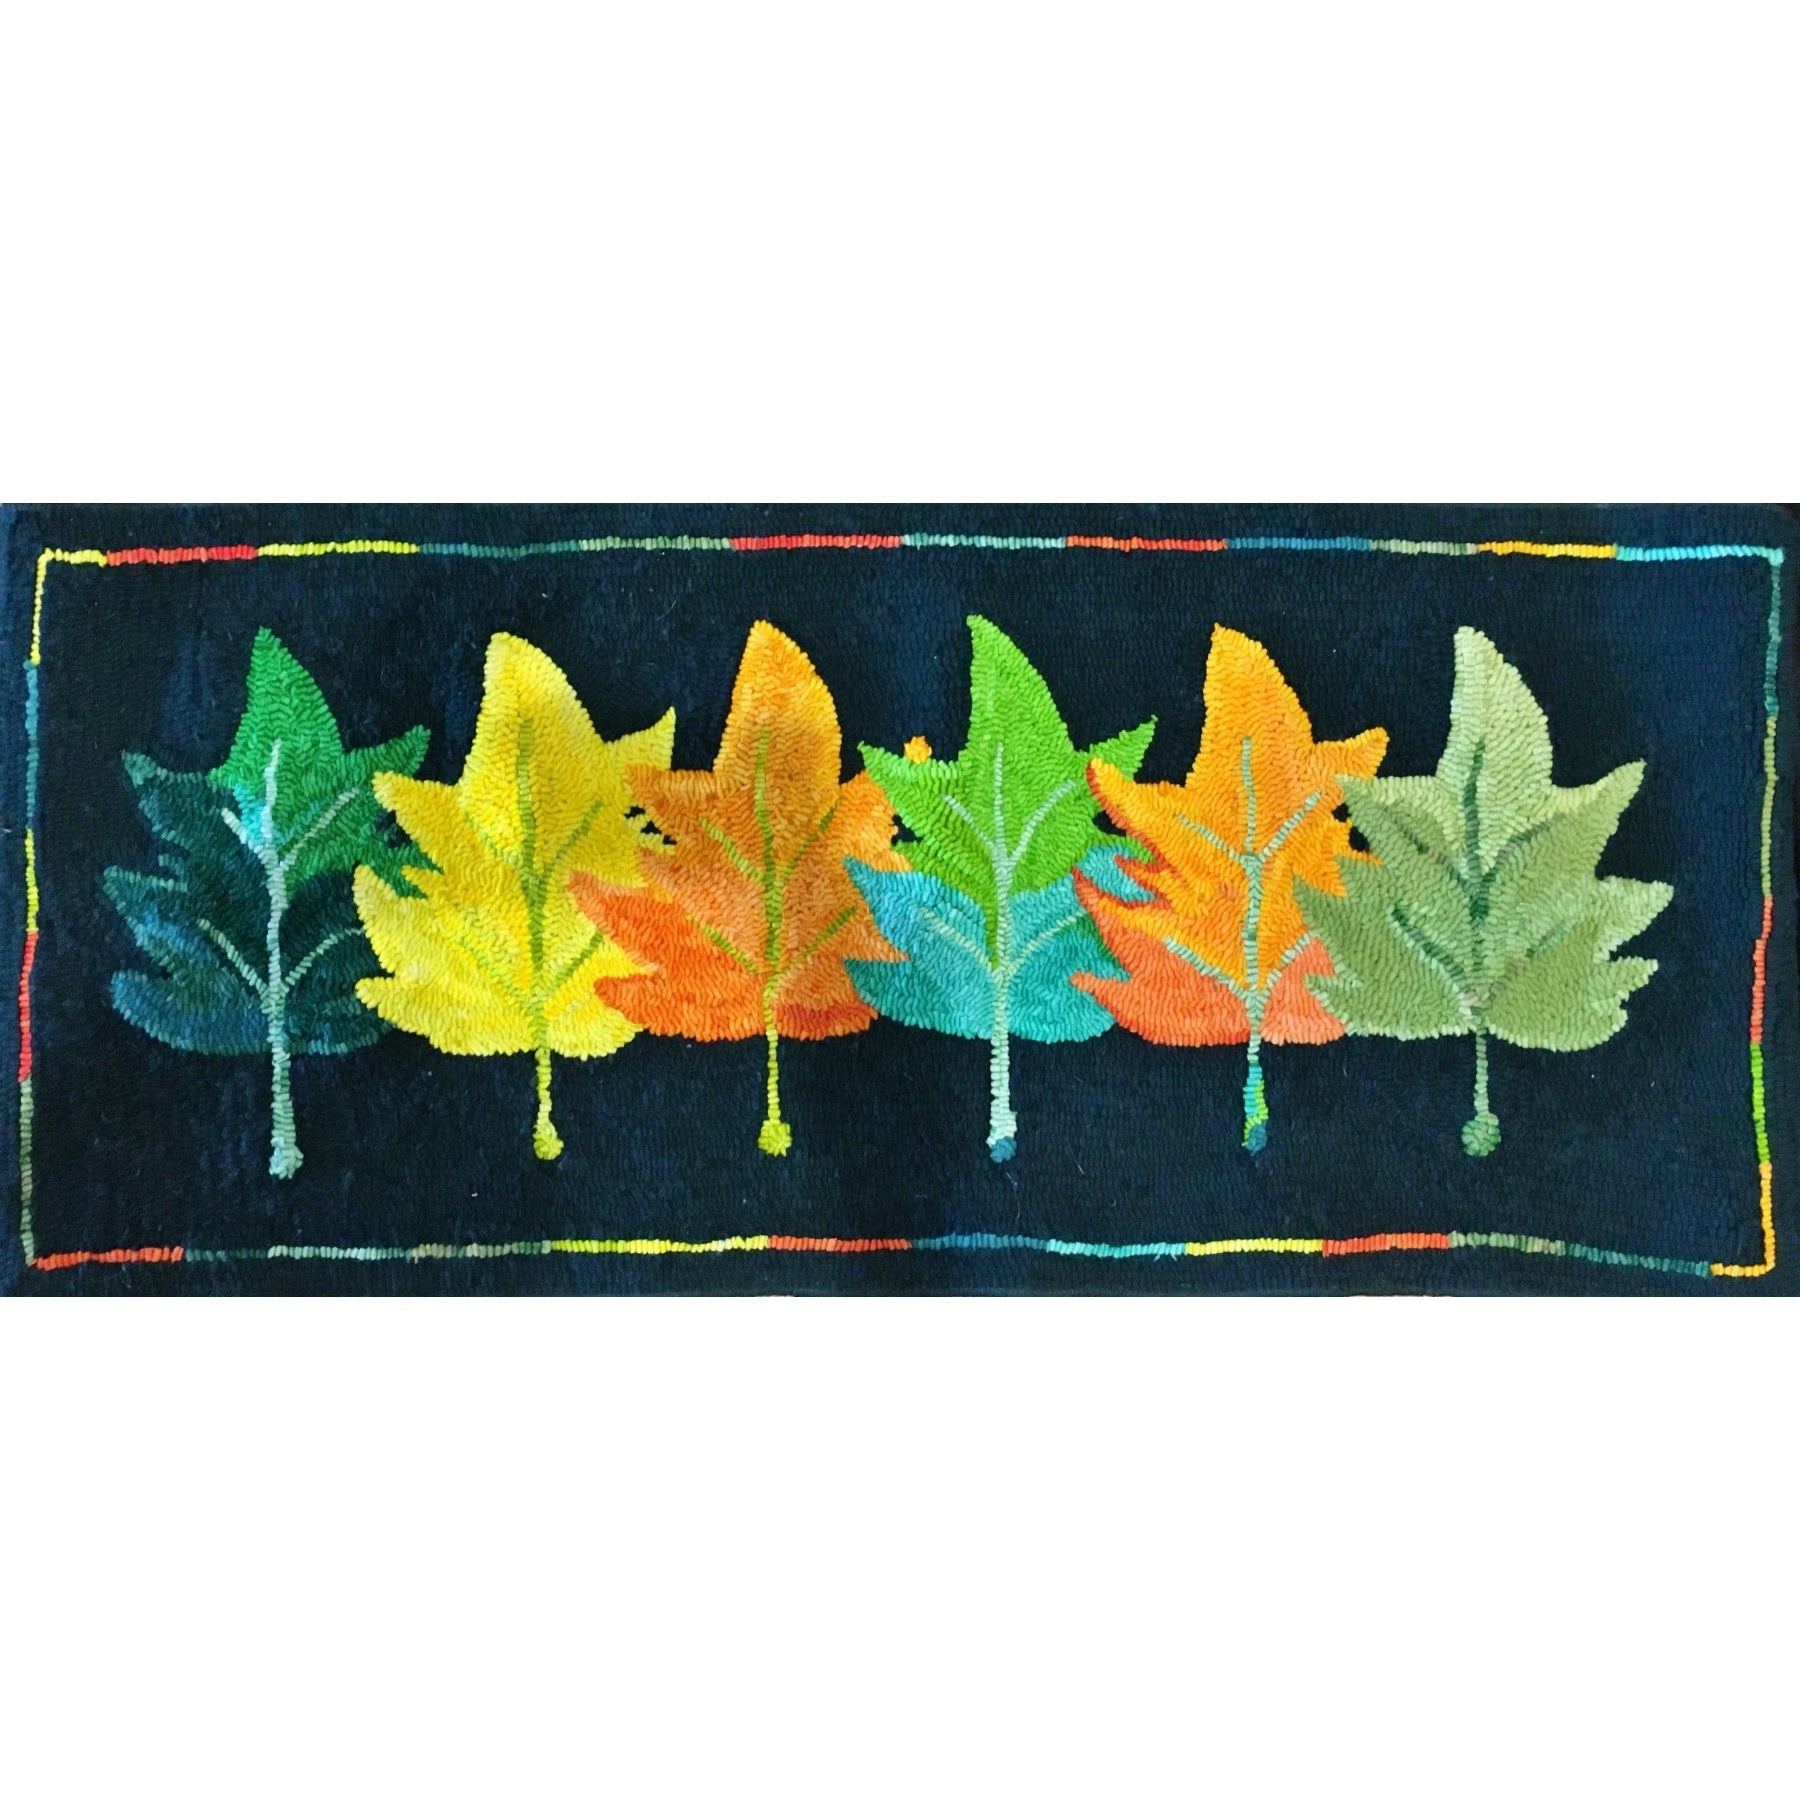 Leaves On Leaves, rug hooked by Nancy Zuese